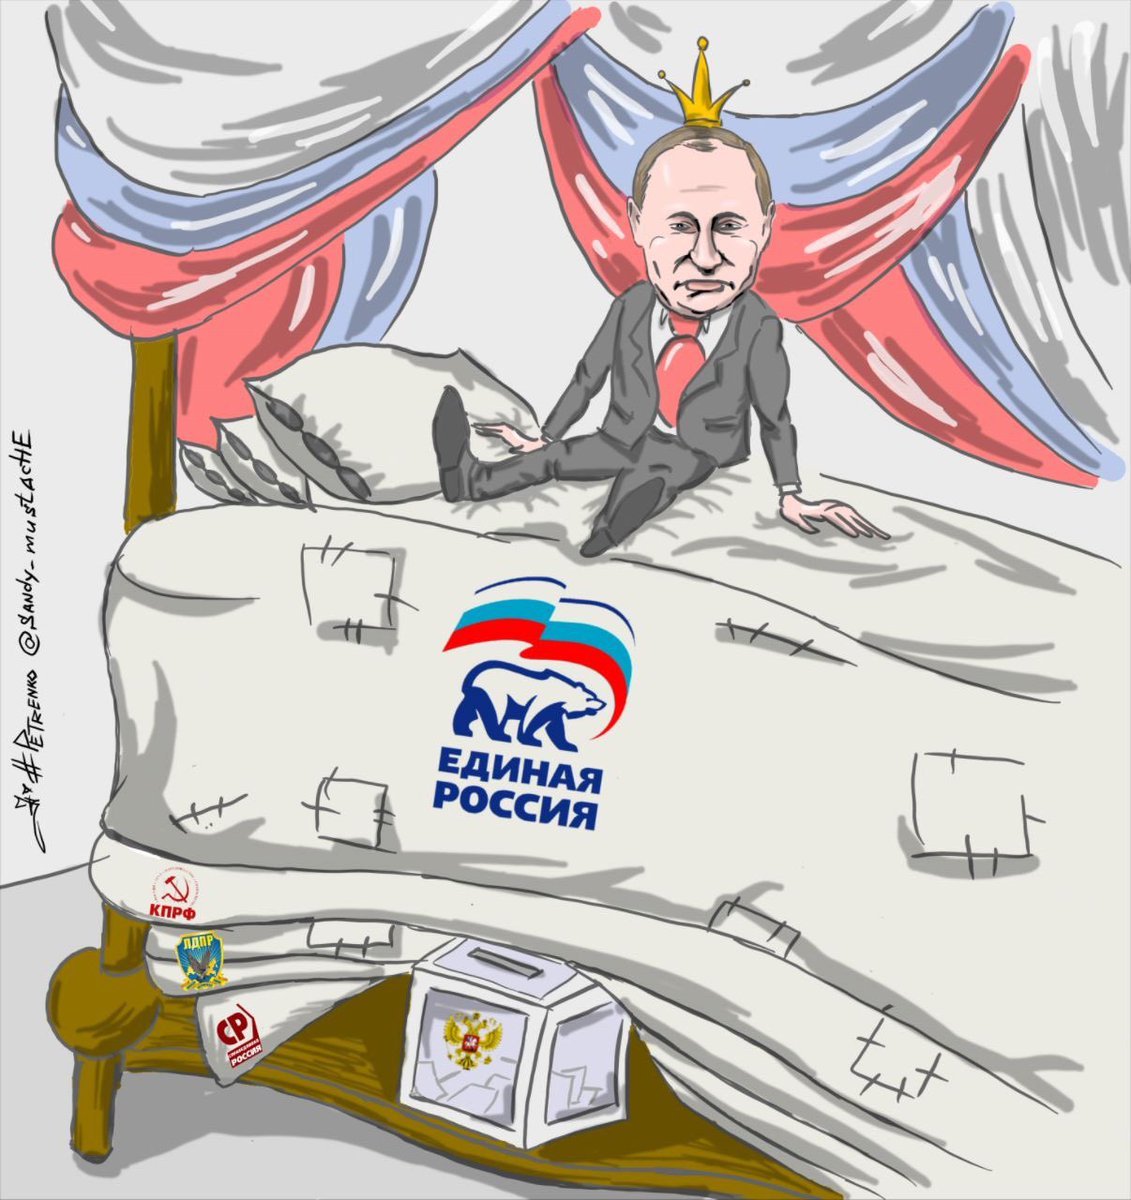 Путин и Единая Россия карикатура